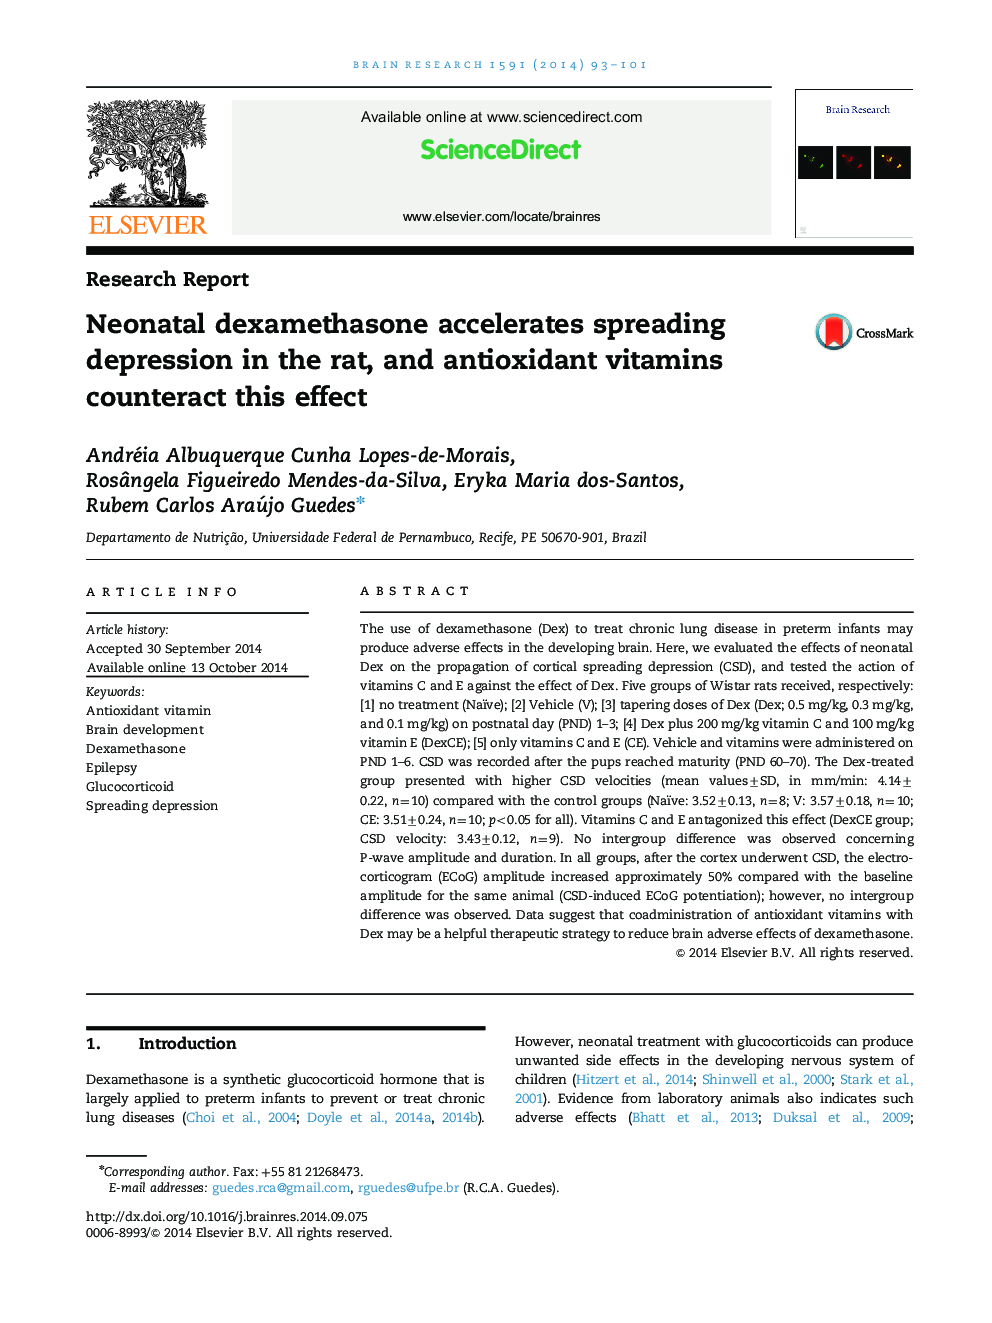 گزارش تحقیقاتی دگزامتازون نئوناتال باعث تسریع افسردگی در موش صحرایی می شود و ویتامین های آنتی اکسیدان این اثر را ضد عفونی می کنند 